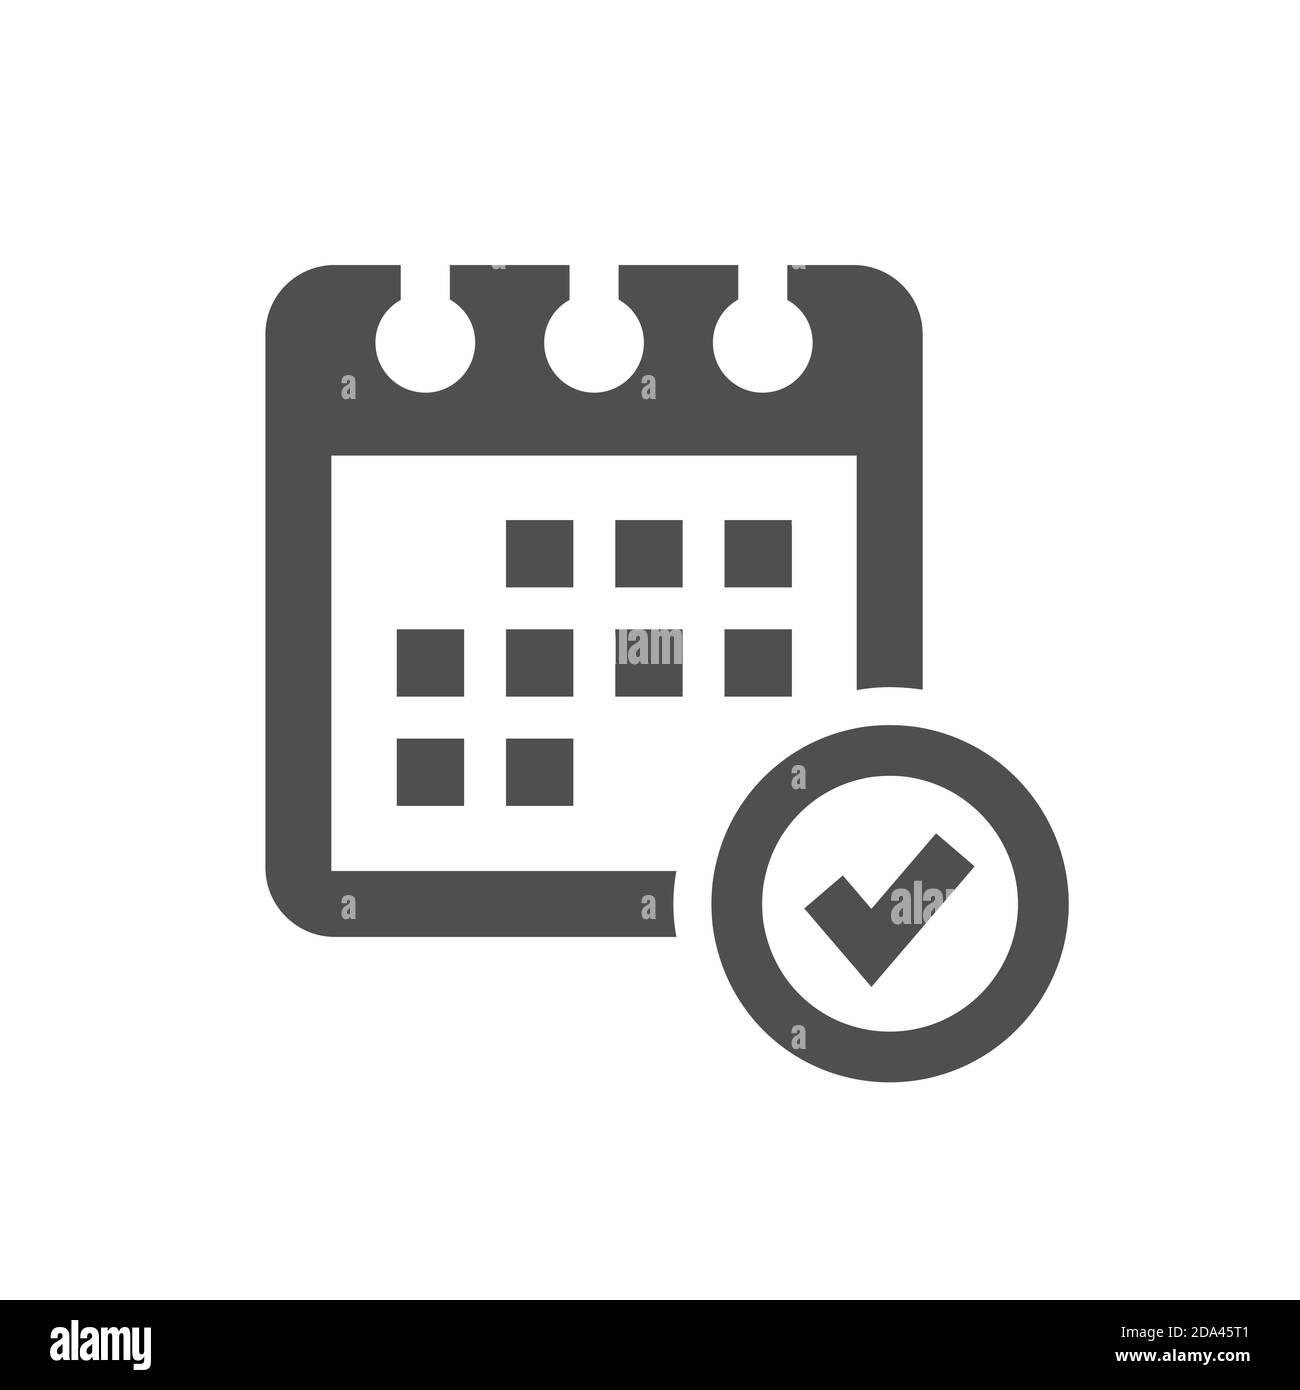 Calendar with tick symbol or check mark. Black vector icon. Stock Vector